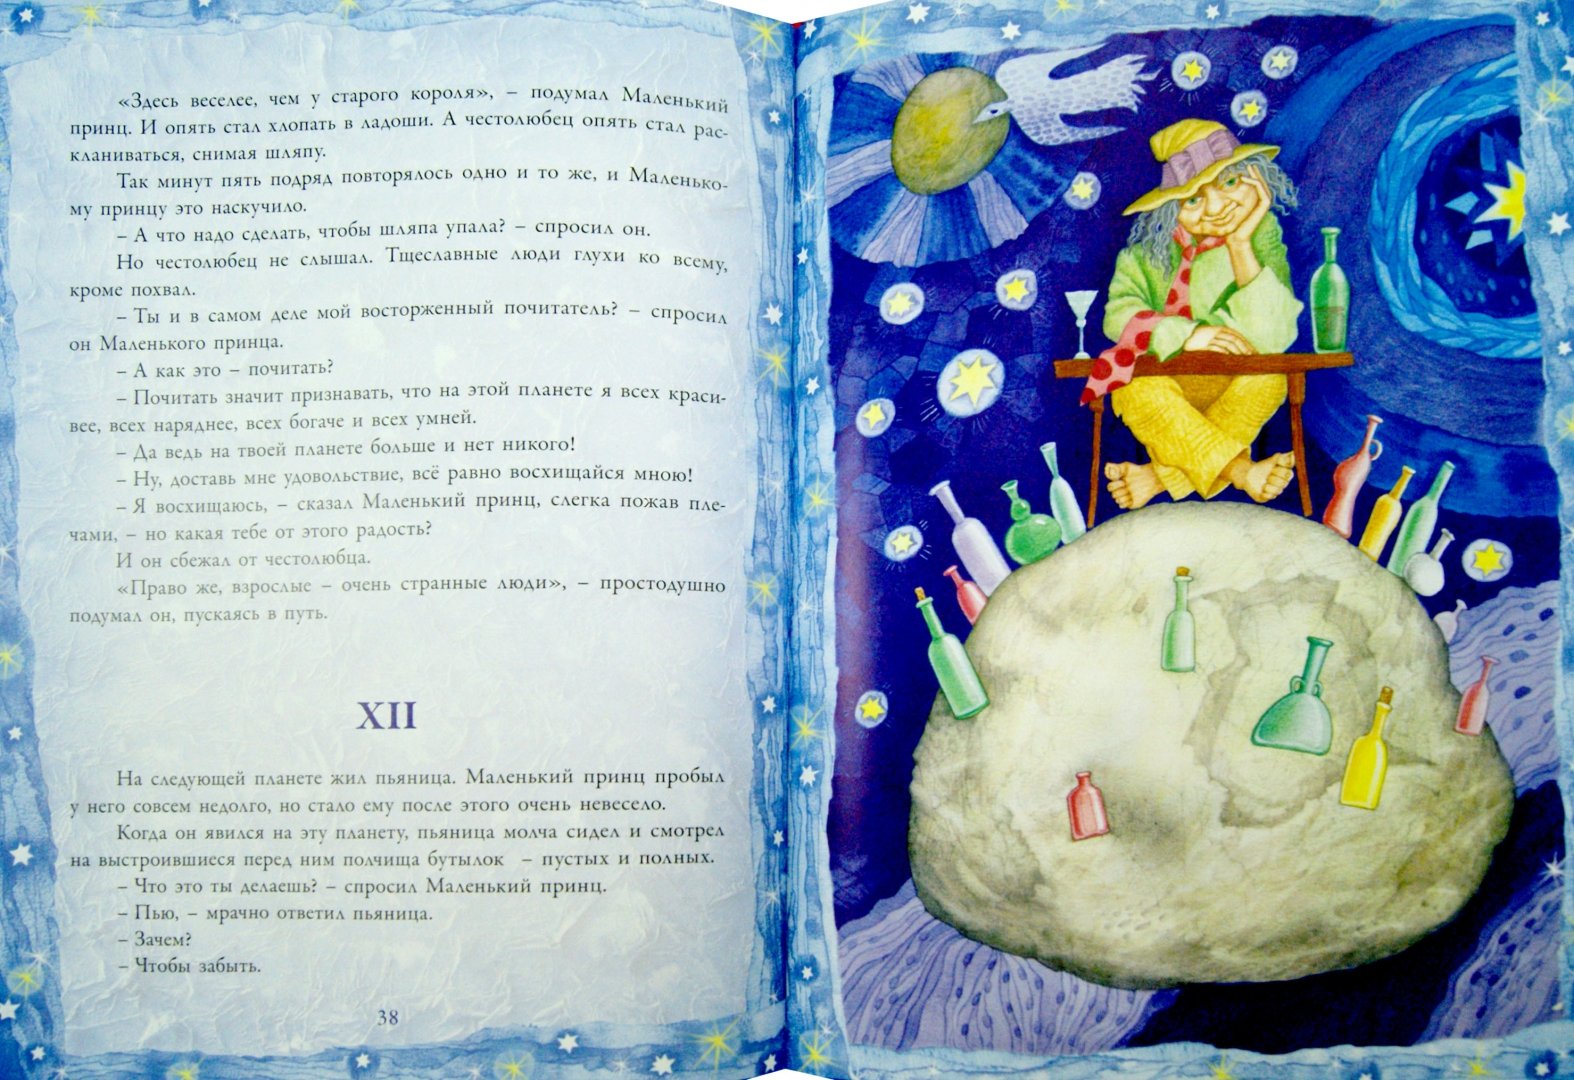 Иллюстрация 1 из 39 для Маленький принц - Антуан Сент-Экзюпери | Лабиринт - книги. Источник: Лабиринт